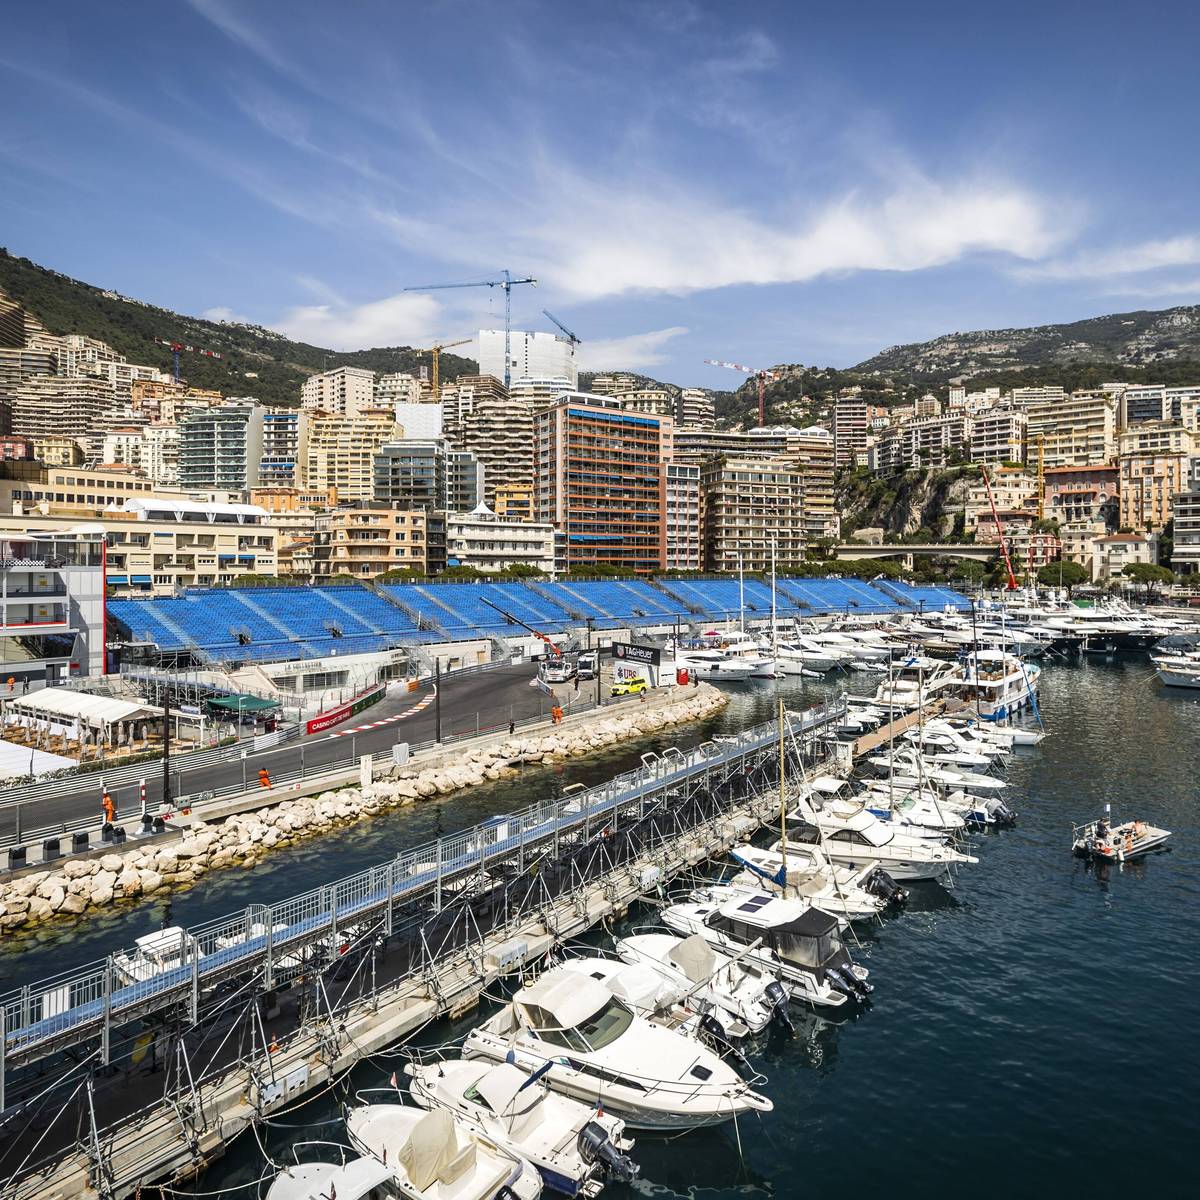 Ein Blick auf die Wettervorhersage für das Formel-1-Rennen in Monaco sorgt für zwiespältige Meinungen. Auch der Unfall im Qualifying bietet Gesprächsstoff. Die Stimmen.